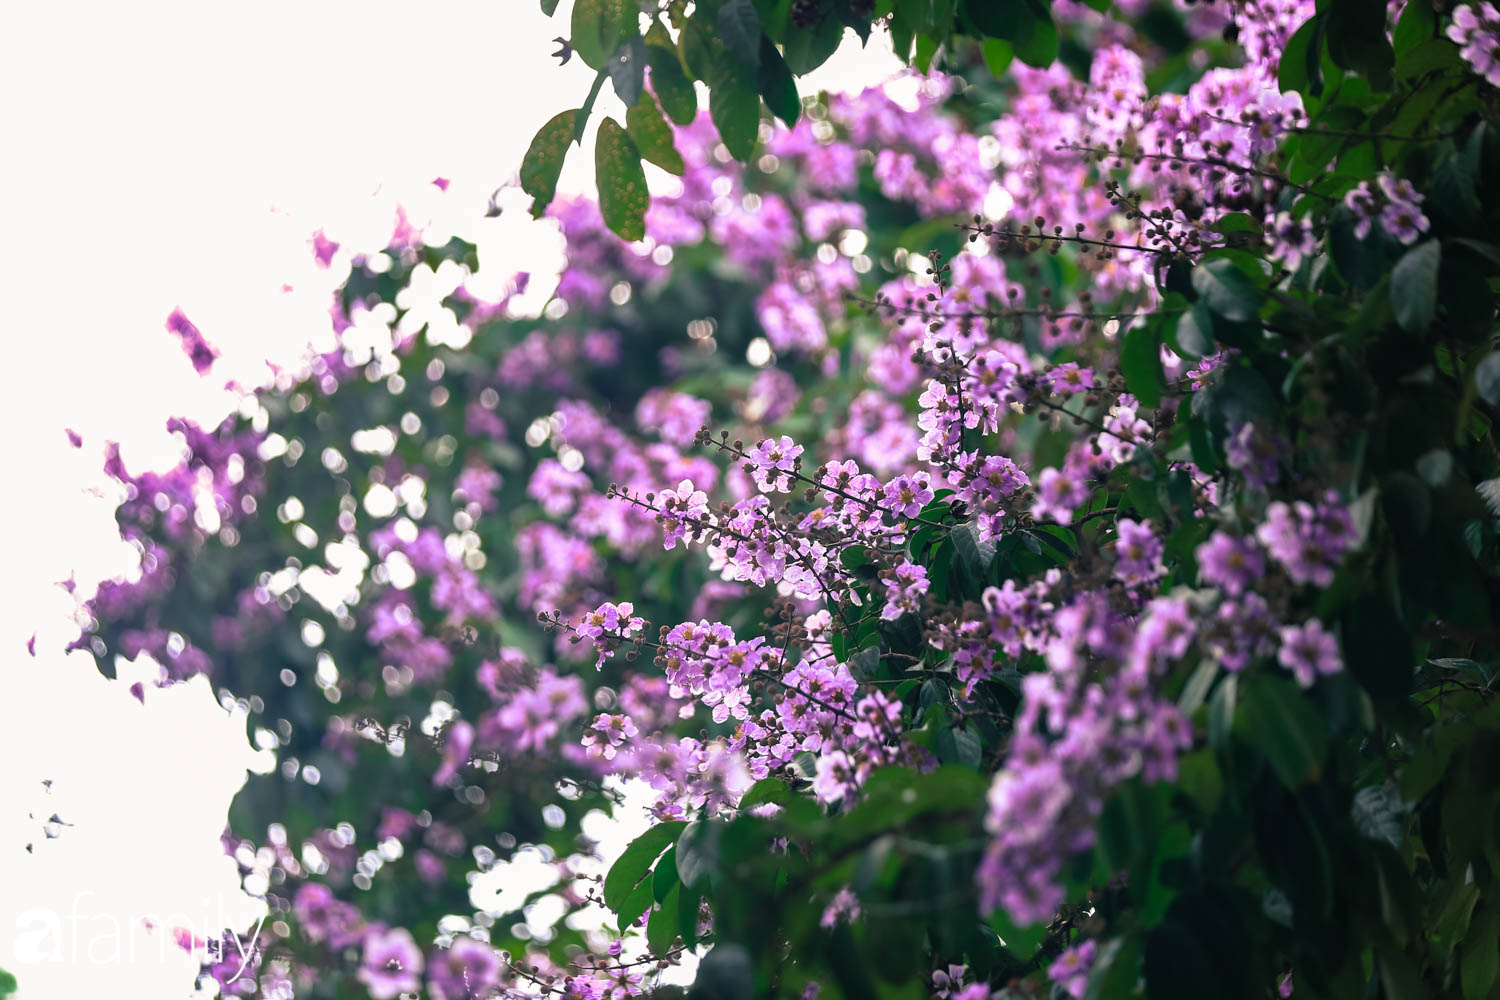 Trở lại cuộc sống bộn bề như trước, có mấy ai nhận ra Hà Nội đang trong một mùa hoa bằng lăng đẹp tuyệt vời - Ảnh 8.